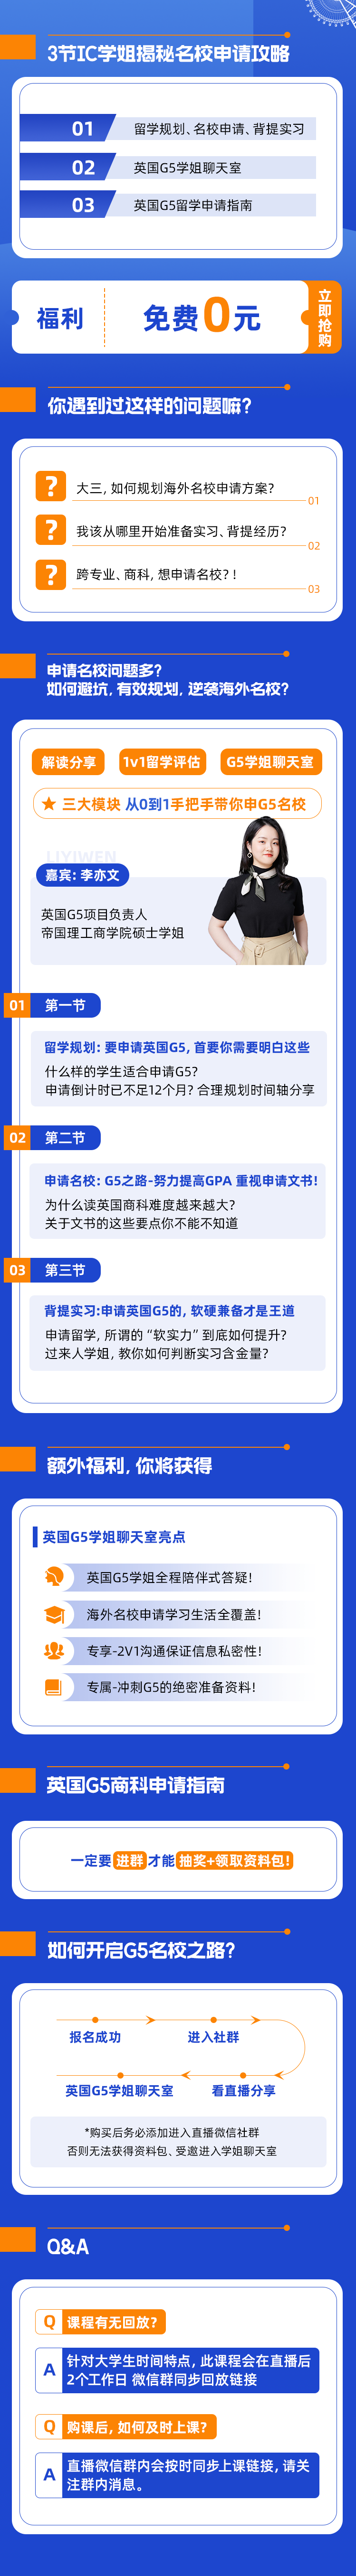 https://simg01.gaodunwangxiao.com/uploadfiles/product-center/202211/21/87e03_20221121153451.png